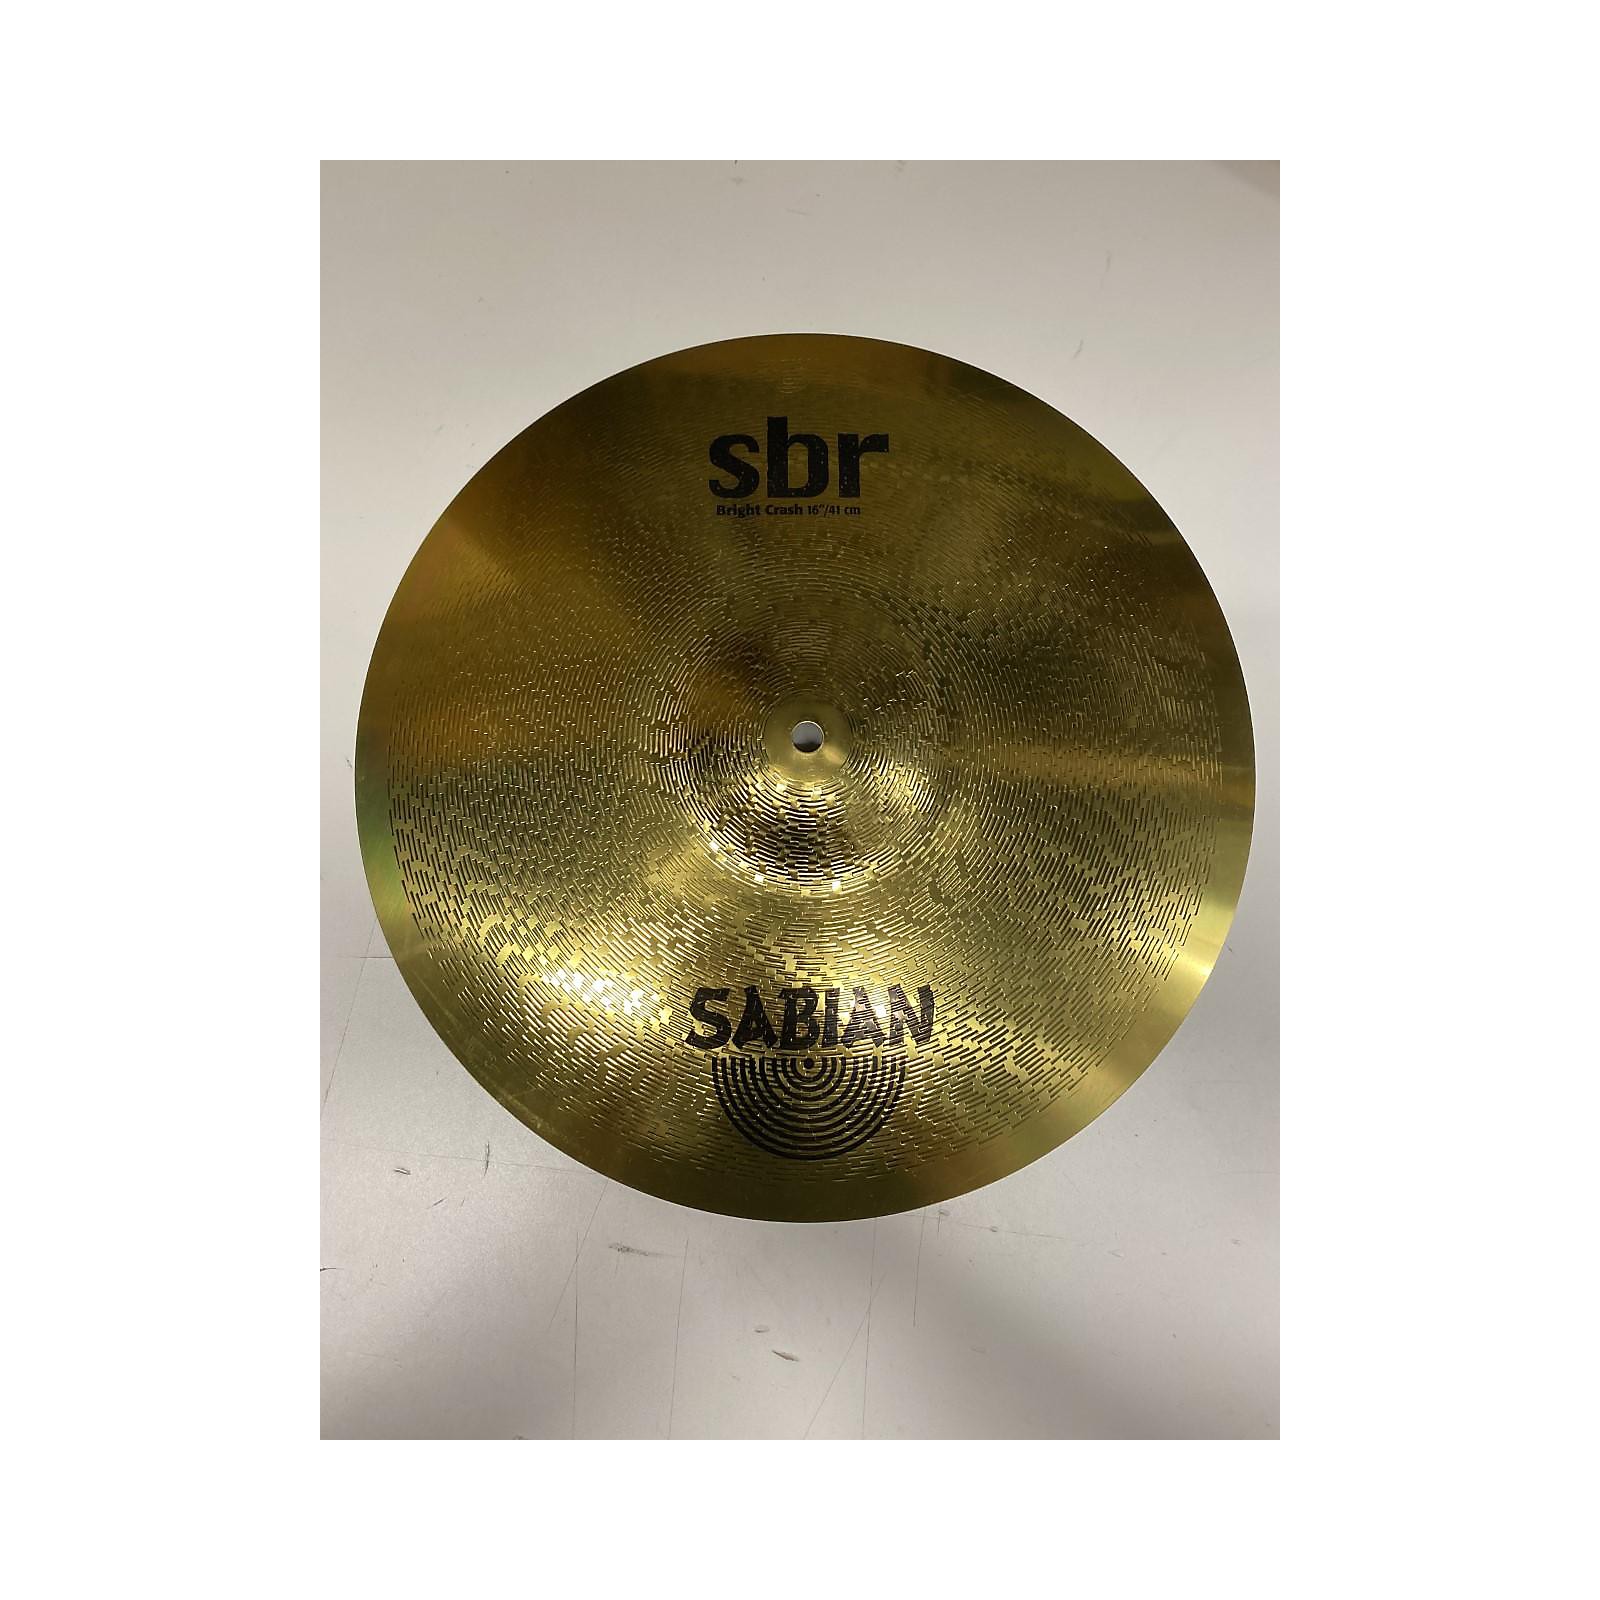 sabian aa sound control crash cymbal 14 in.